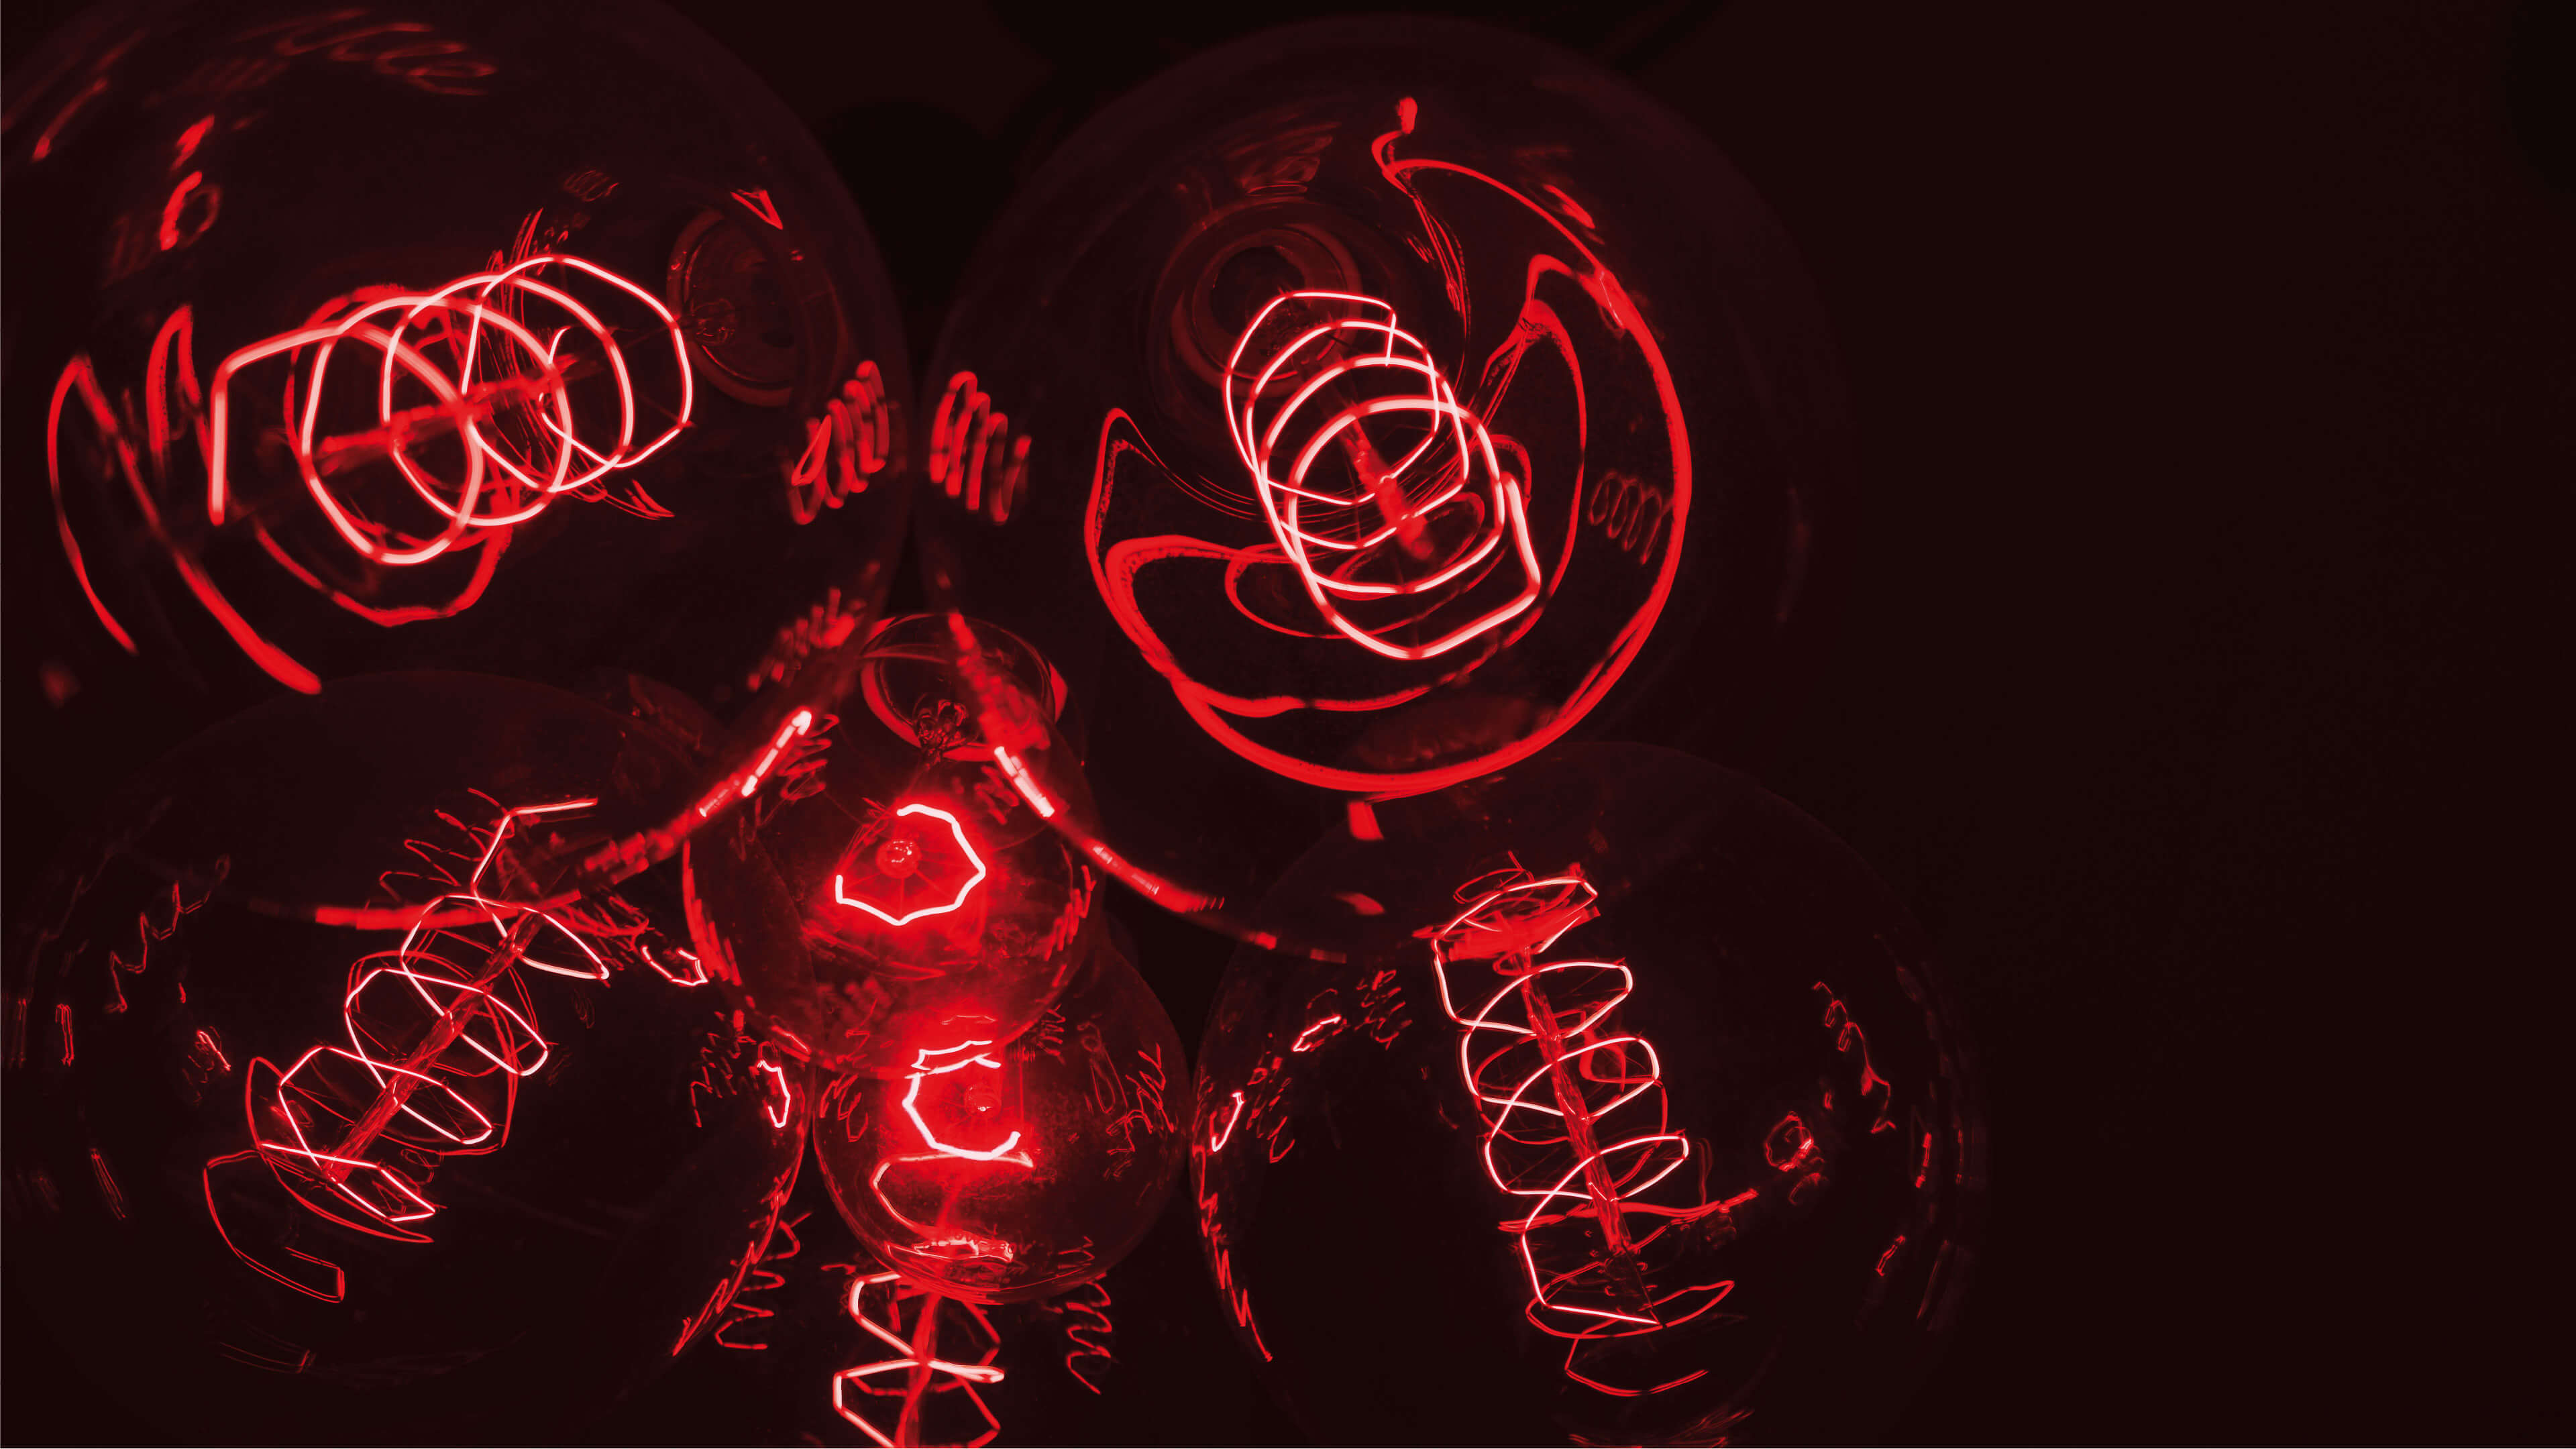 Leuchtende Spiralen in rot